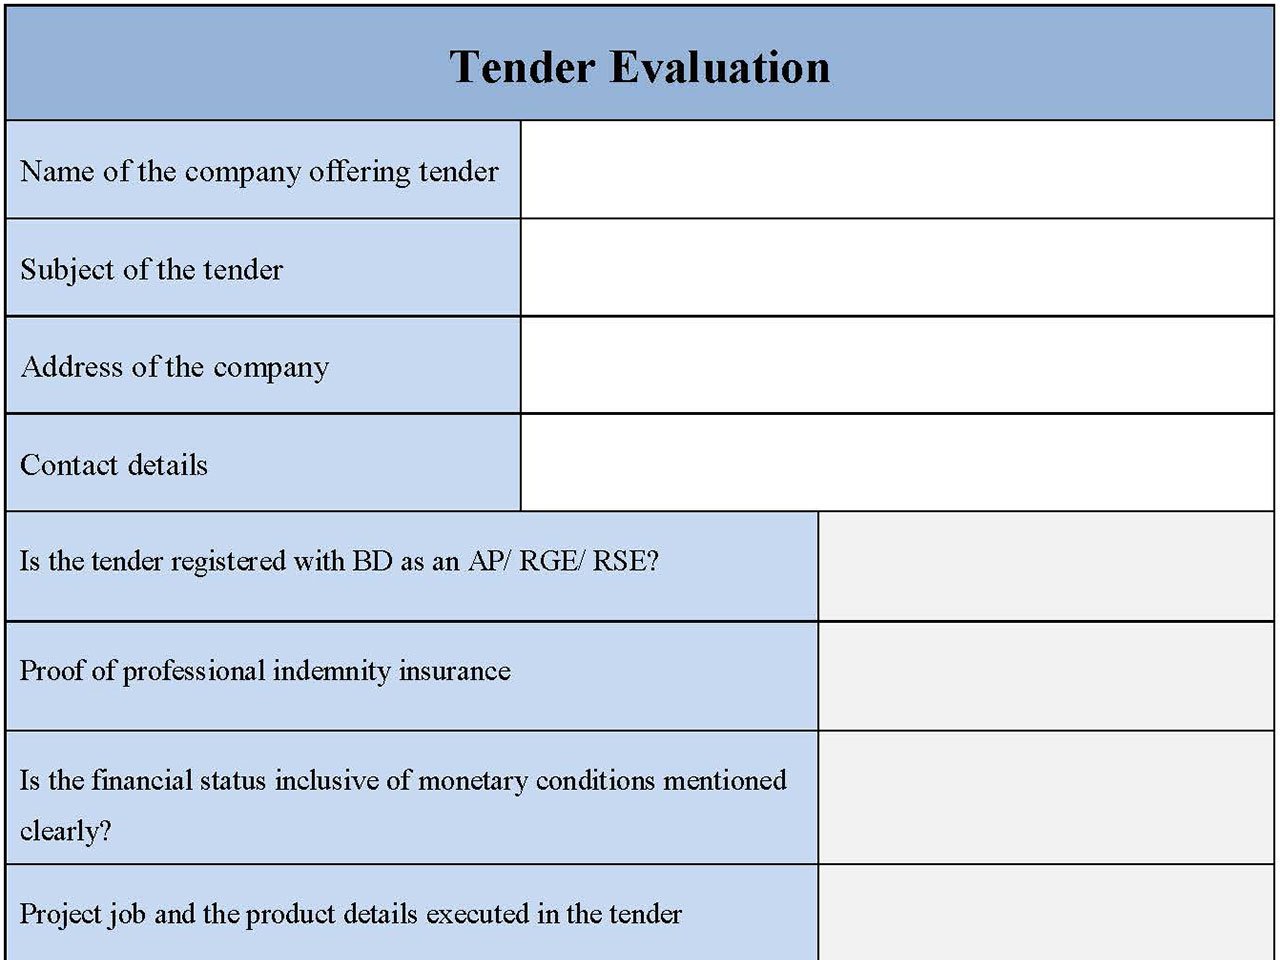 Tender Evaluation Form